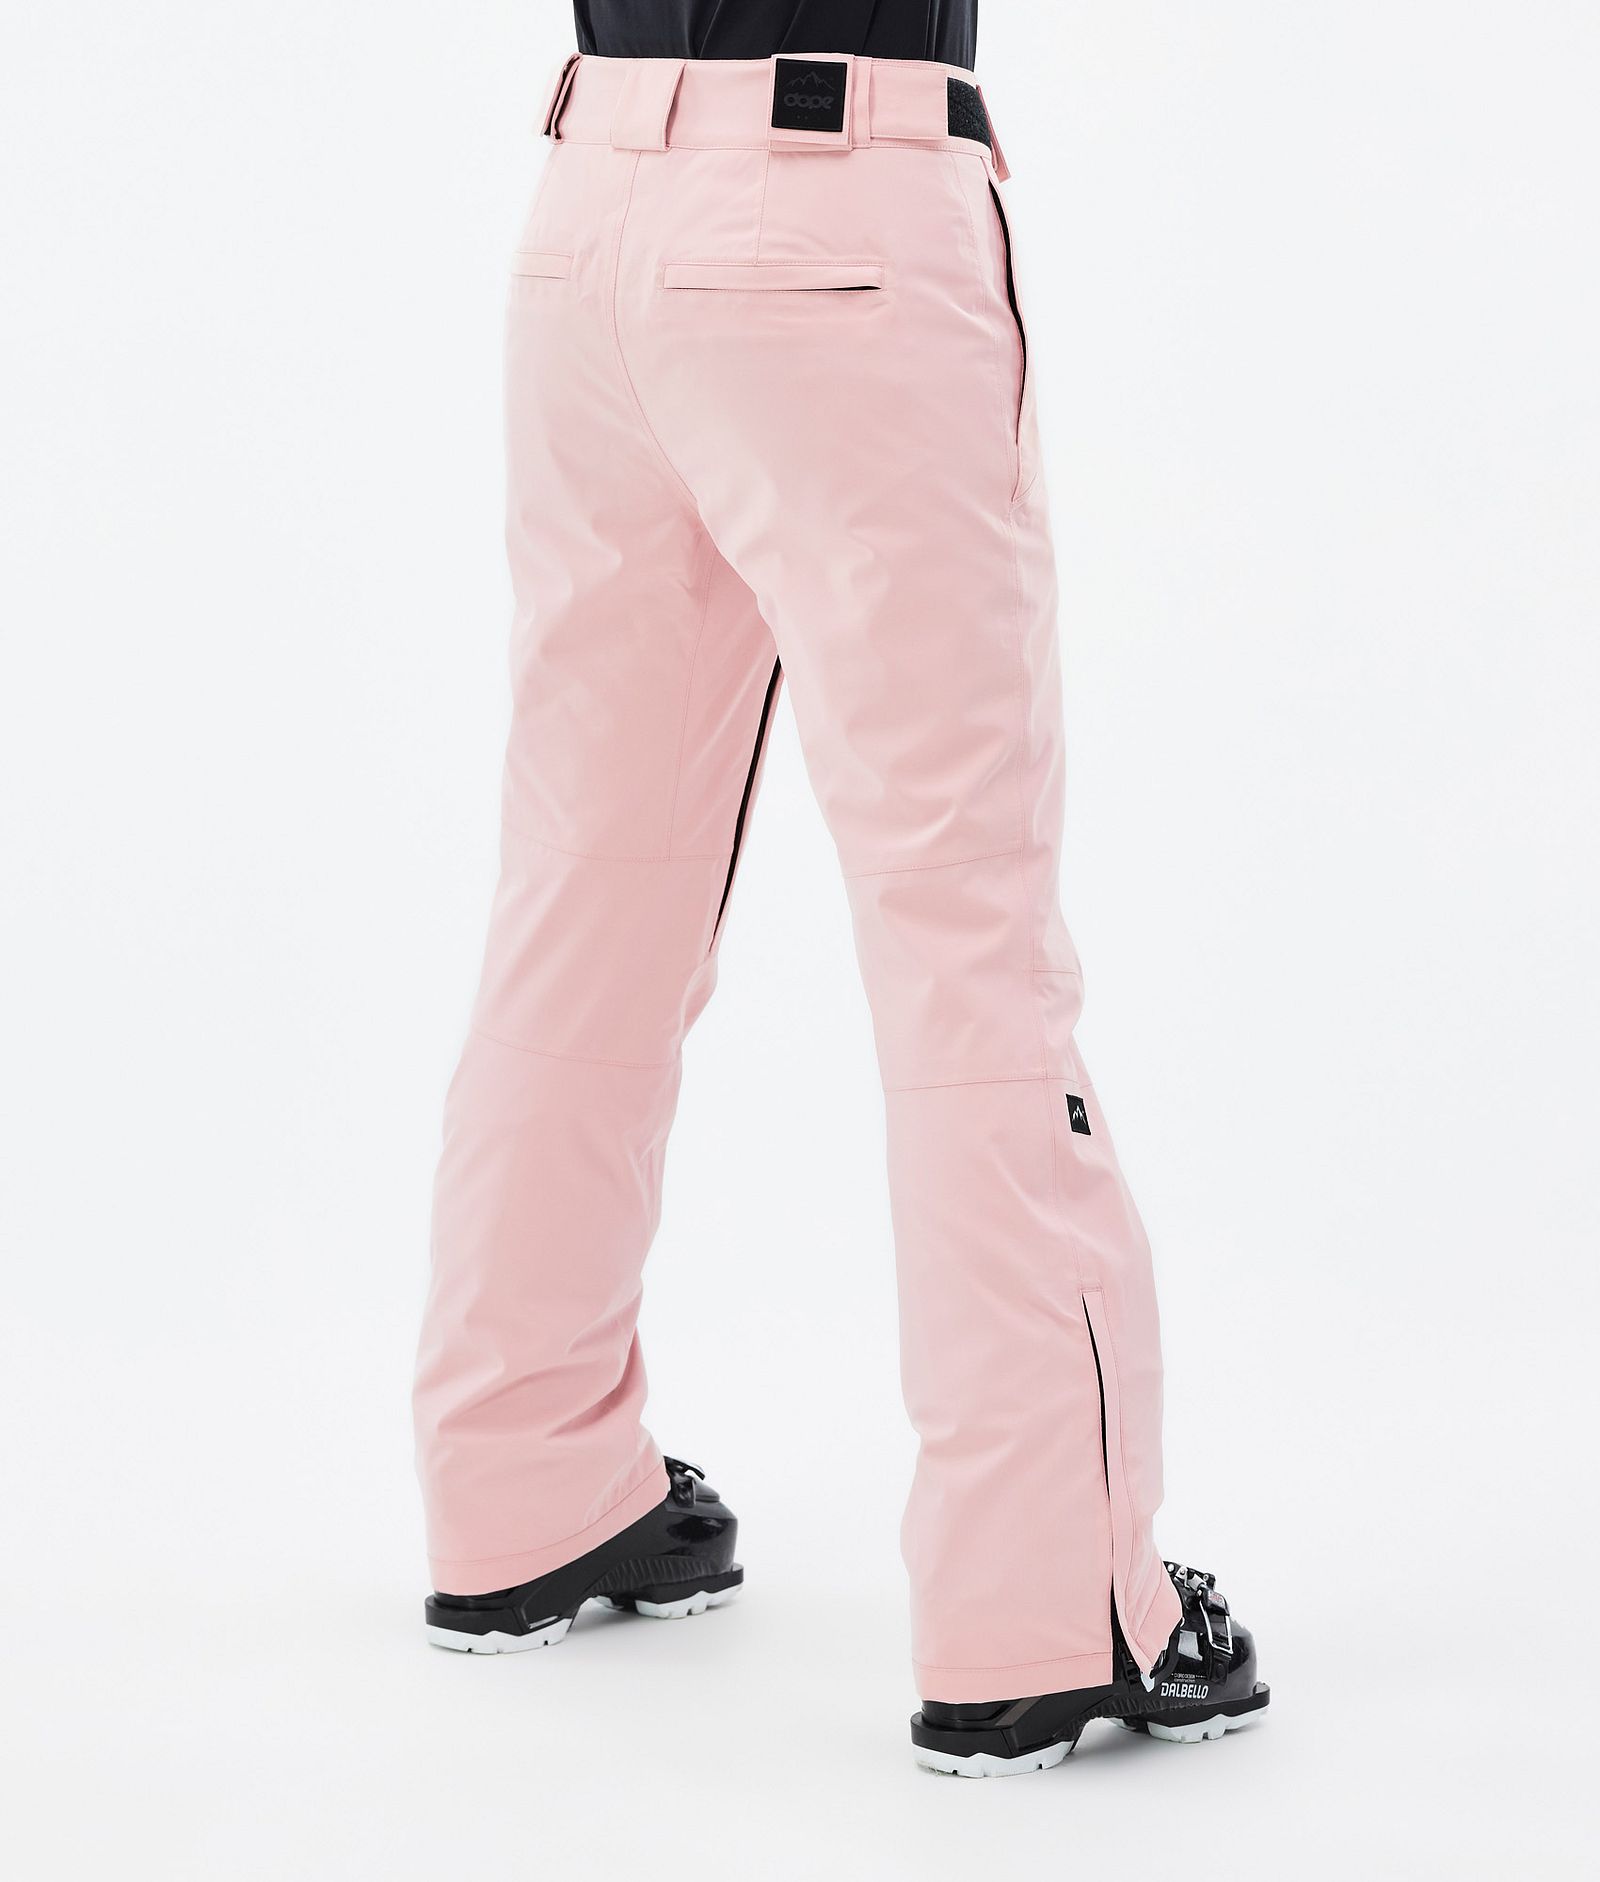 Con W 2022 Pantaloni Sci Donna Soft Pink, Immagine 3 di 5